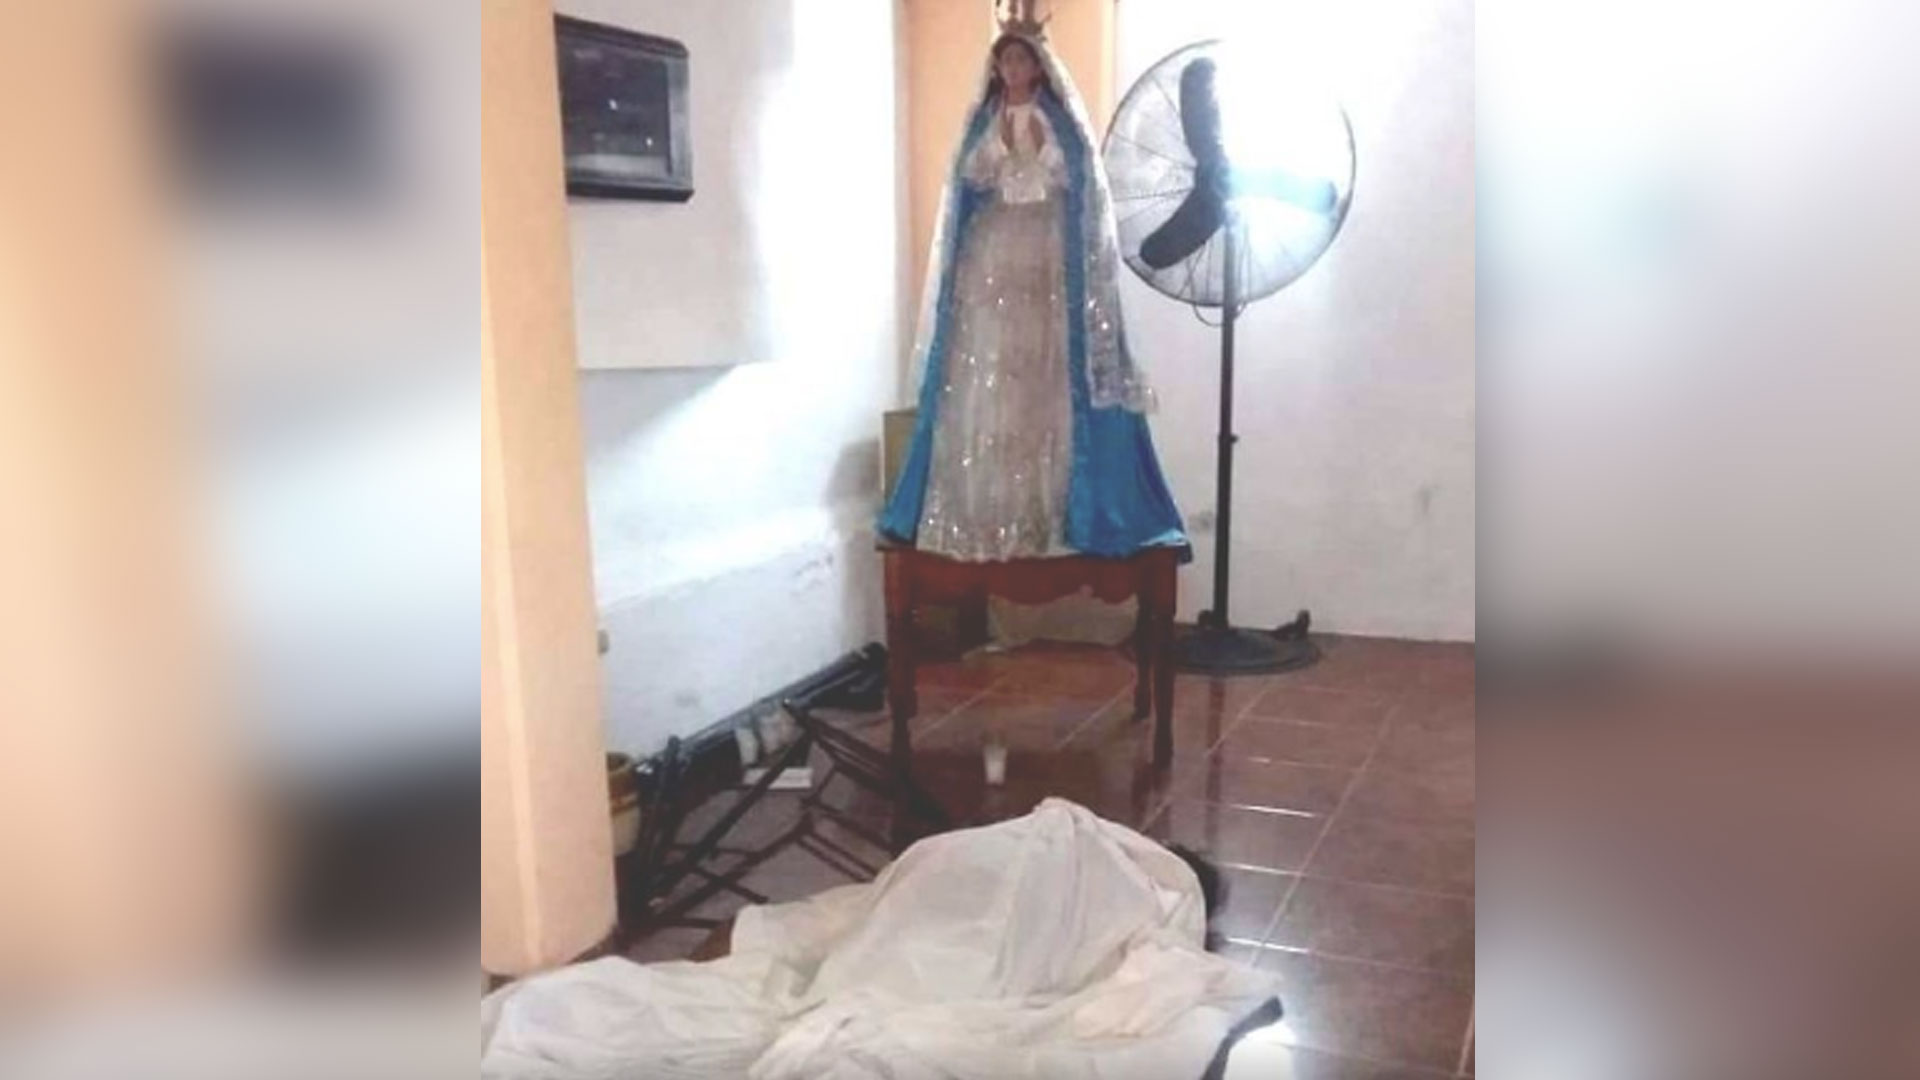 El cuerpo de la mujer quedó a los pies de la Virgen (Foto: Twitter @jfcofernando)